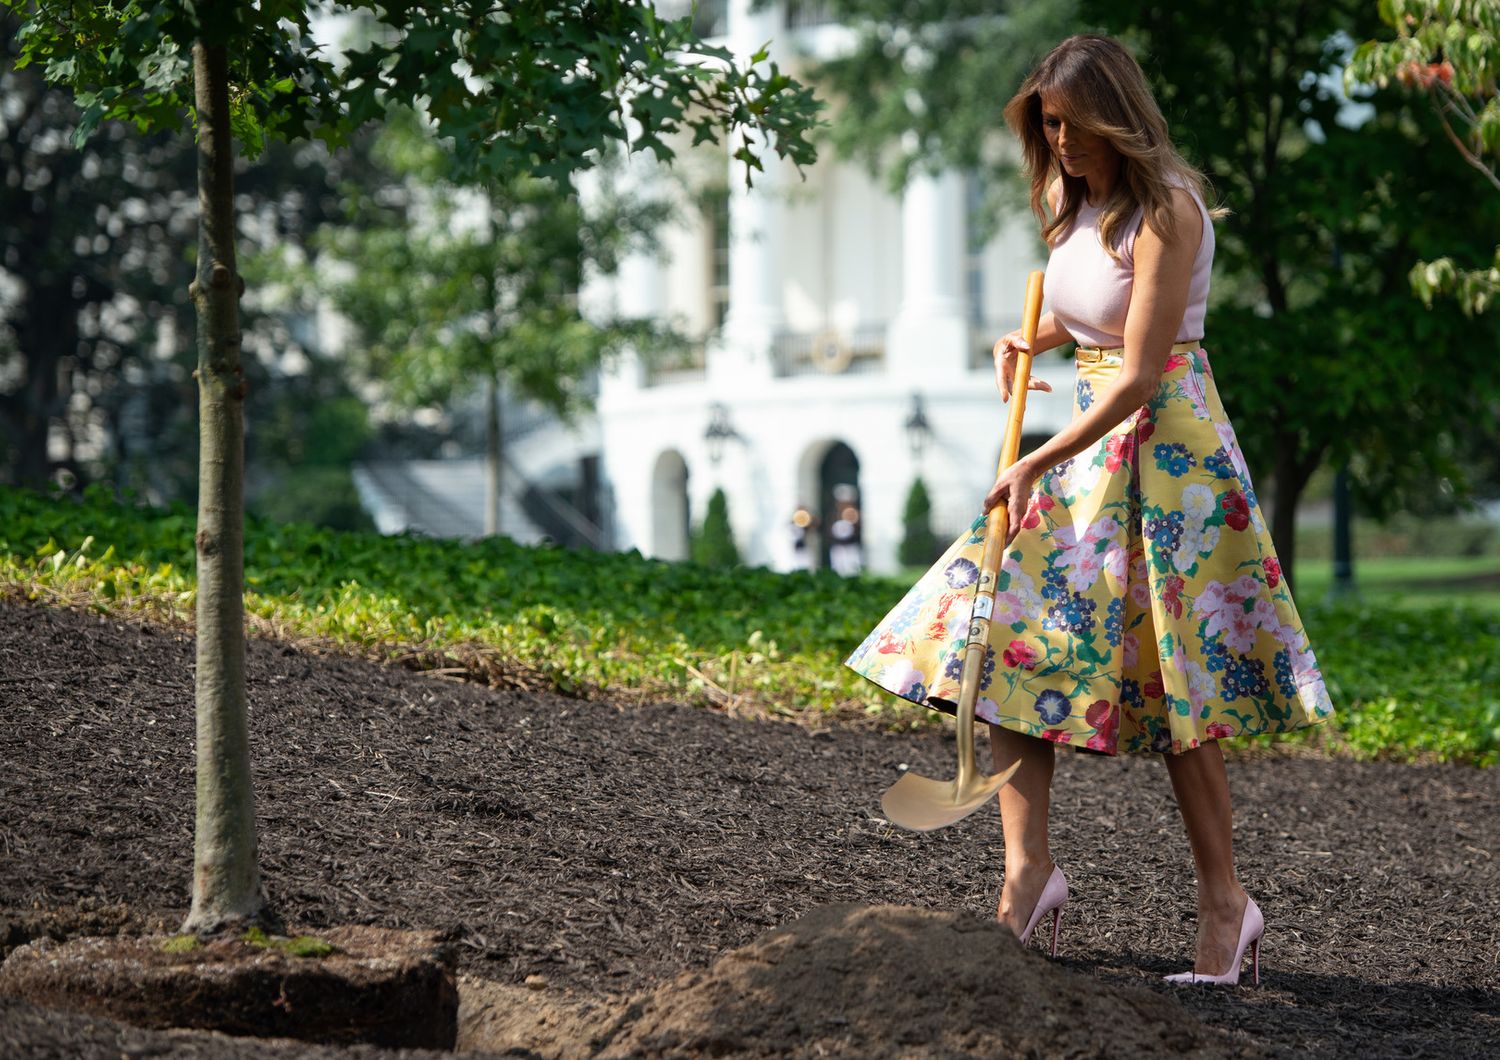 Melania Trump in Louboutin e gonna Valentino per piantare un alberello nel giardino della Casa Bianca&nbsp;